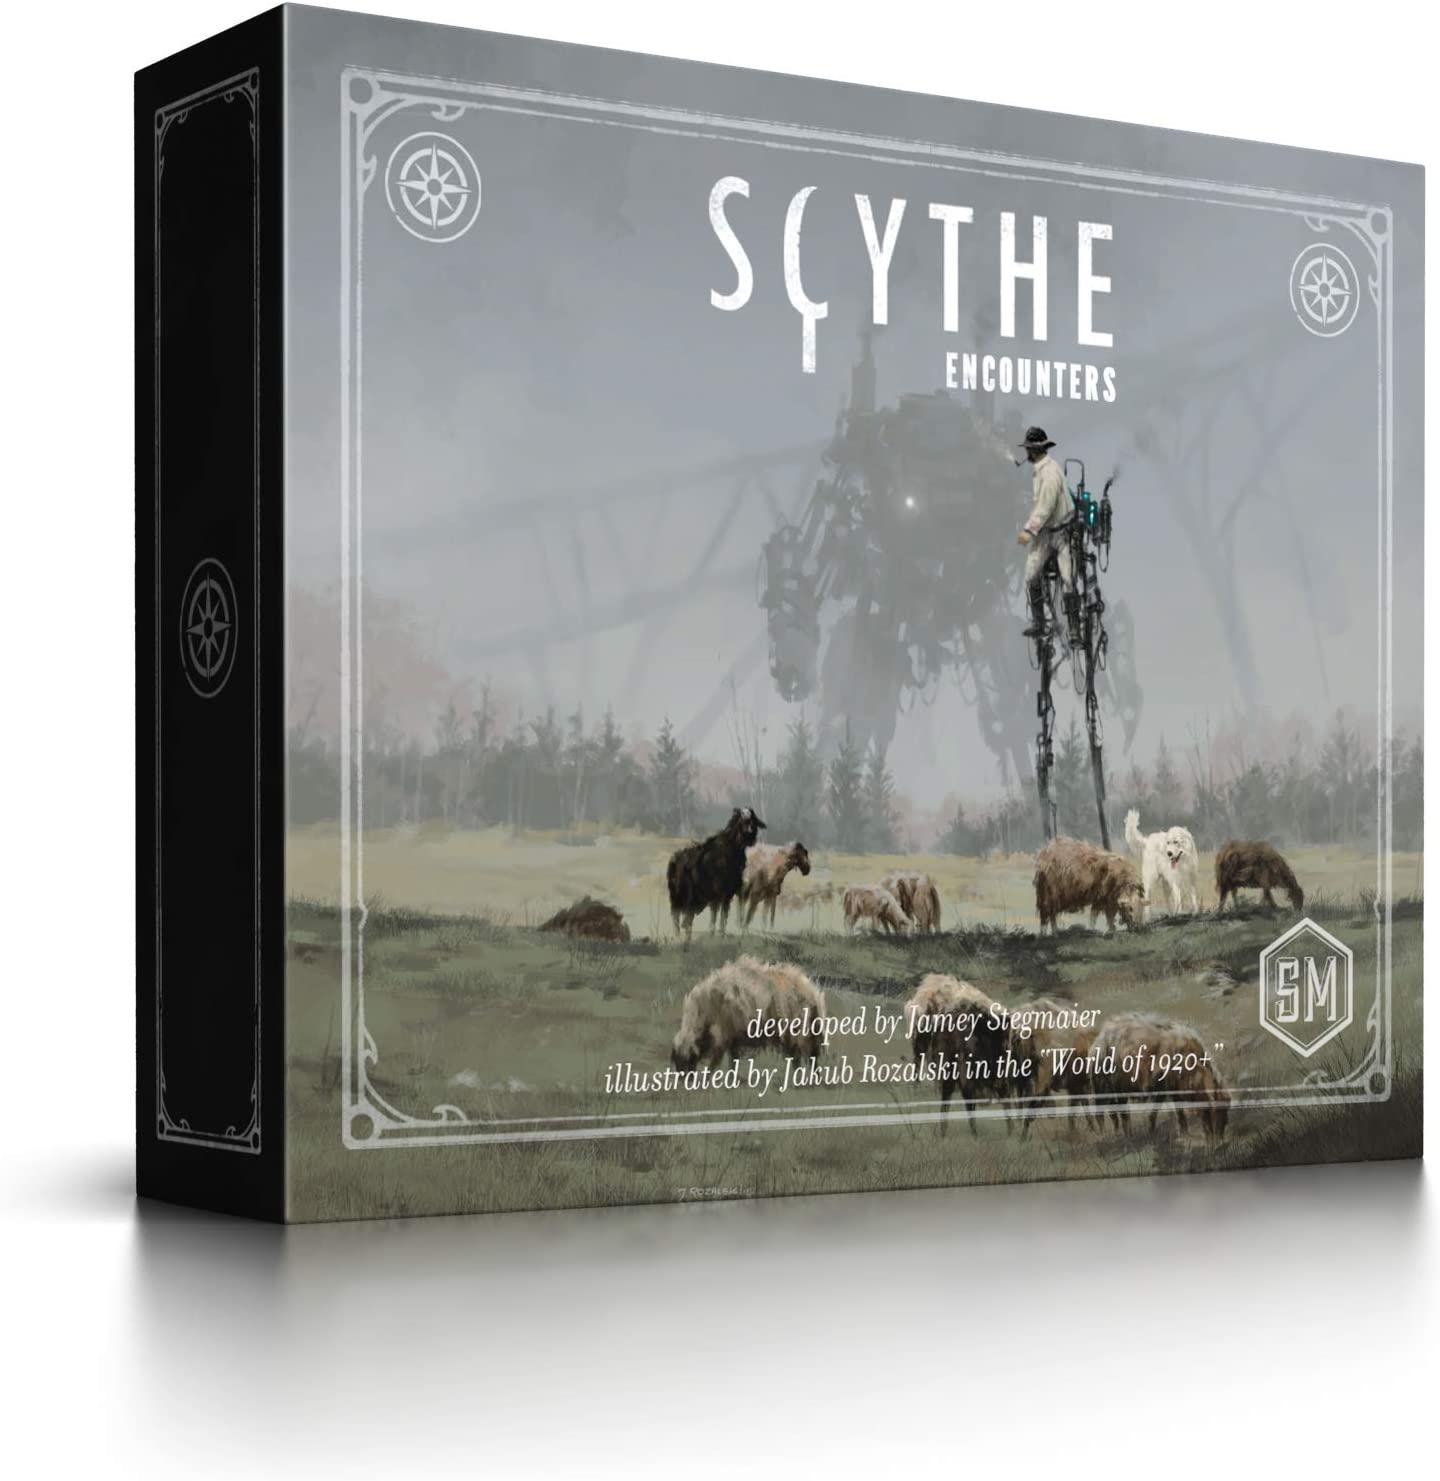 (BSG Certified USED) Scythe - Encounters